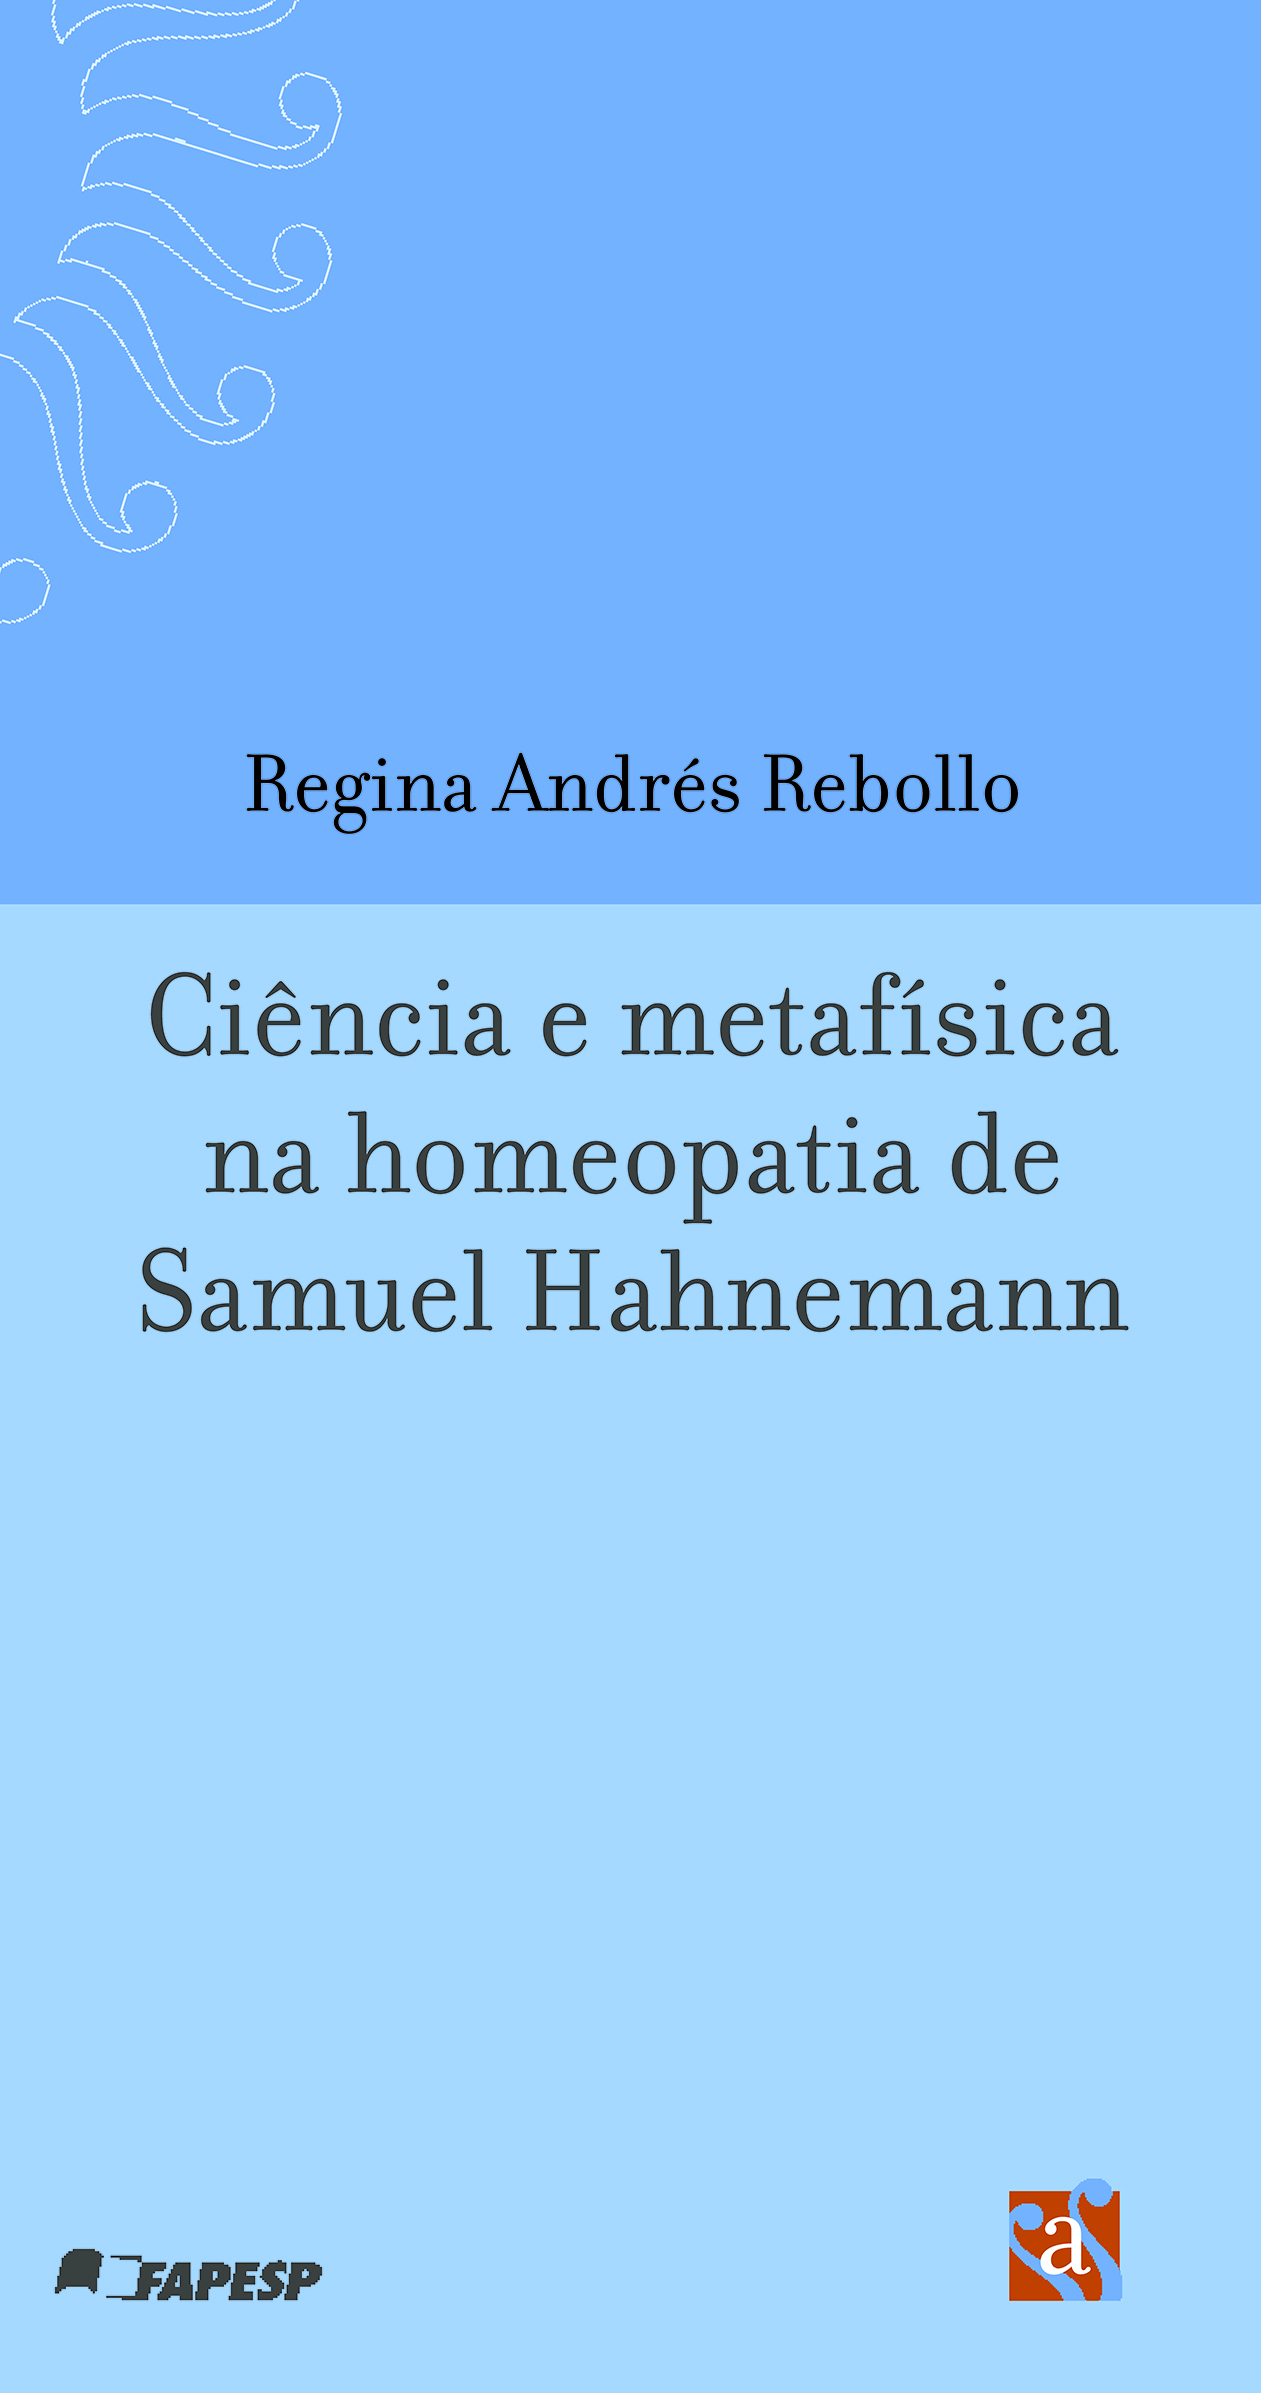 Capa do livro Ciência e metafísica na homeopatia de Samuel Hahnemann